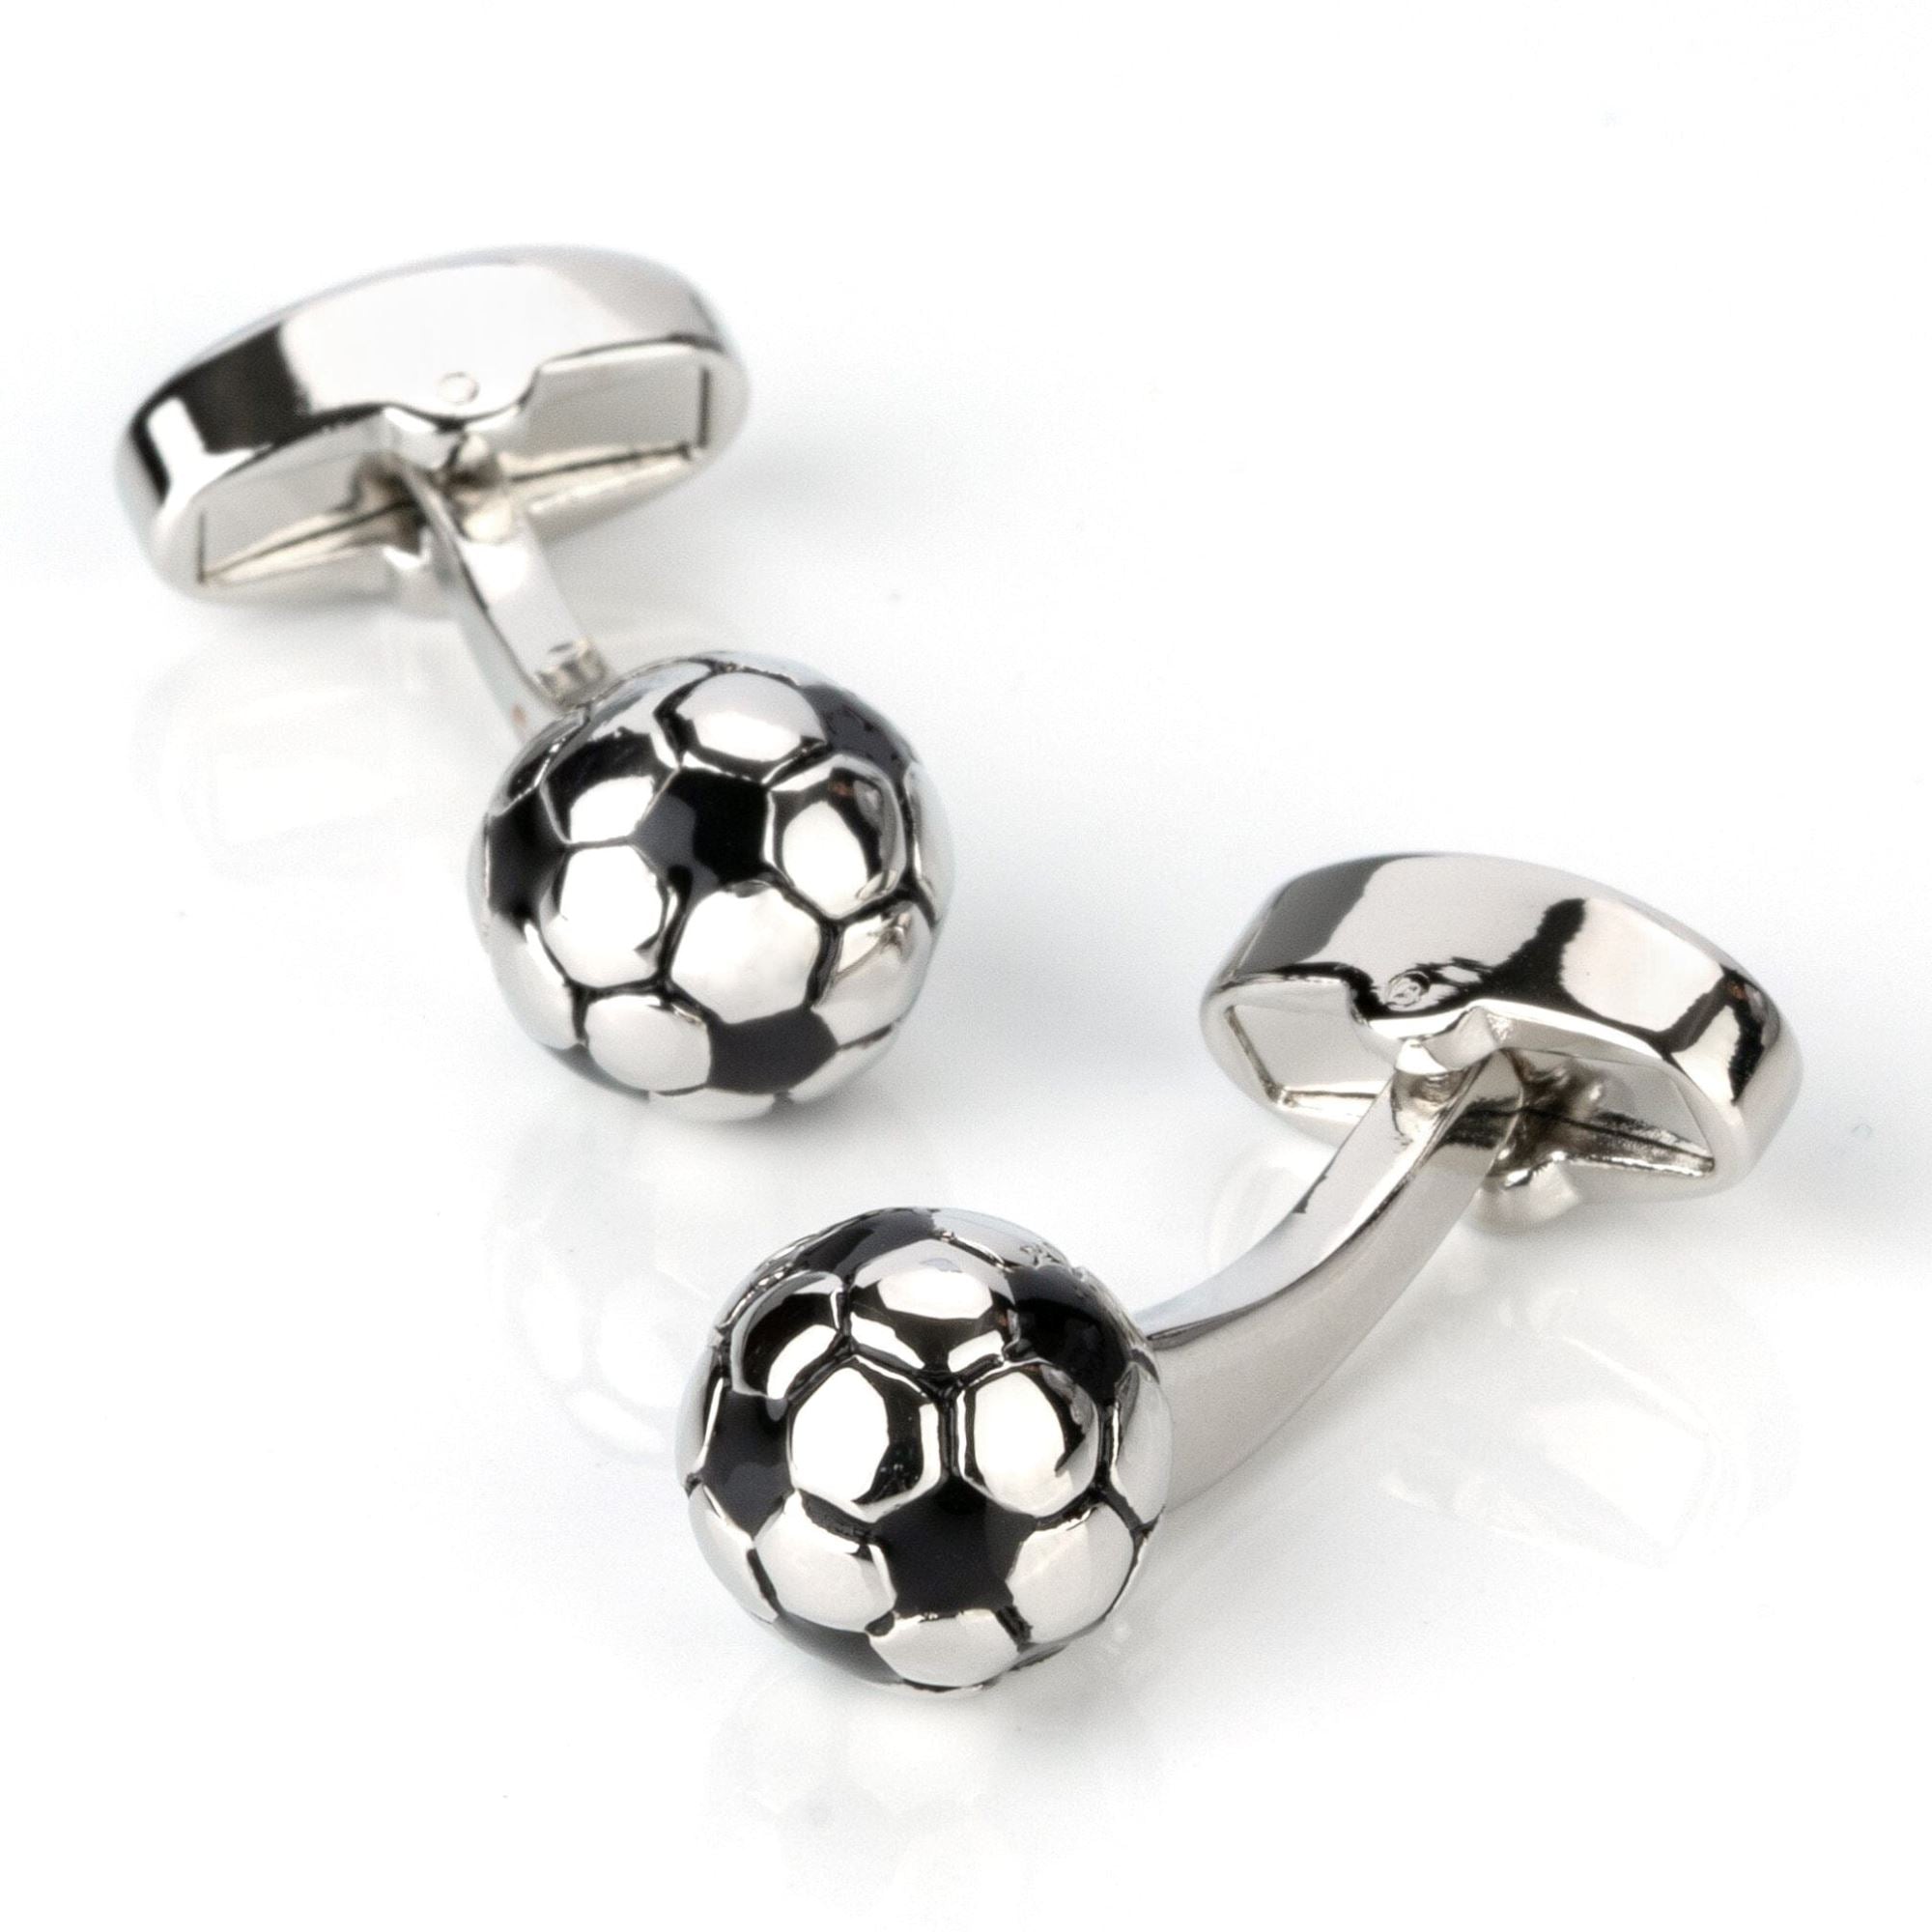 3D Silver and Black Soccer Ball Football Cufflinks Novelty Cufflinks Clinks Australia 